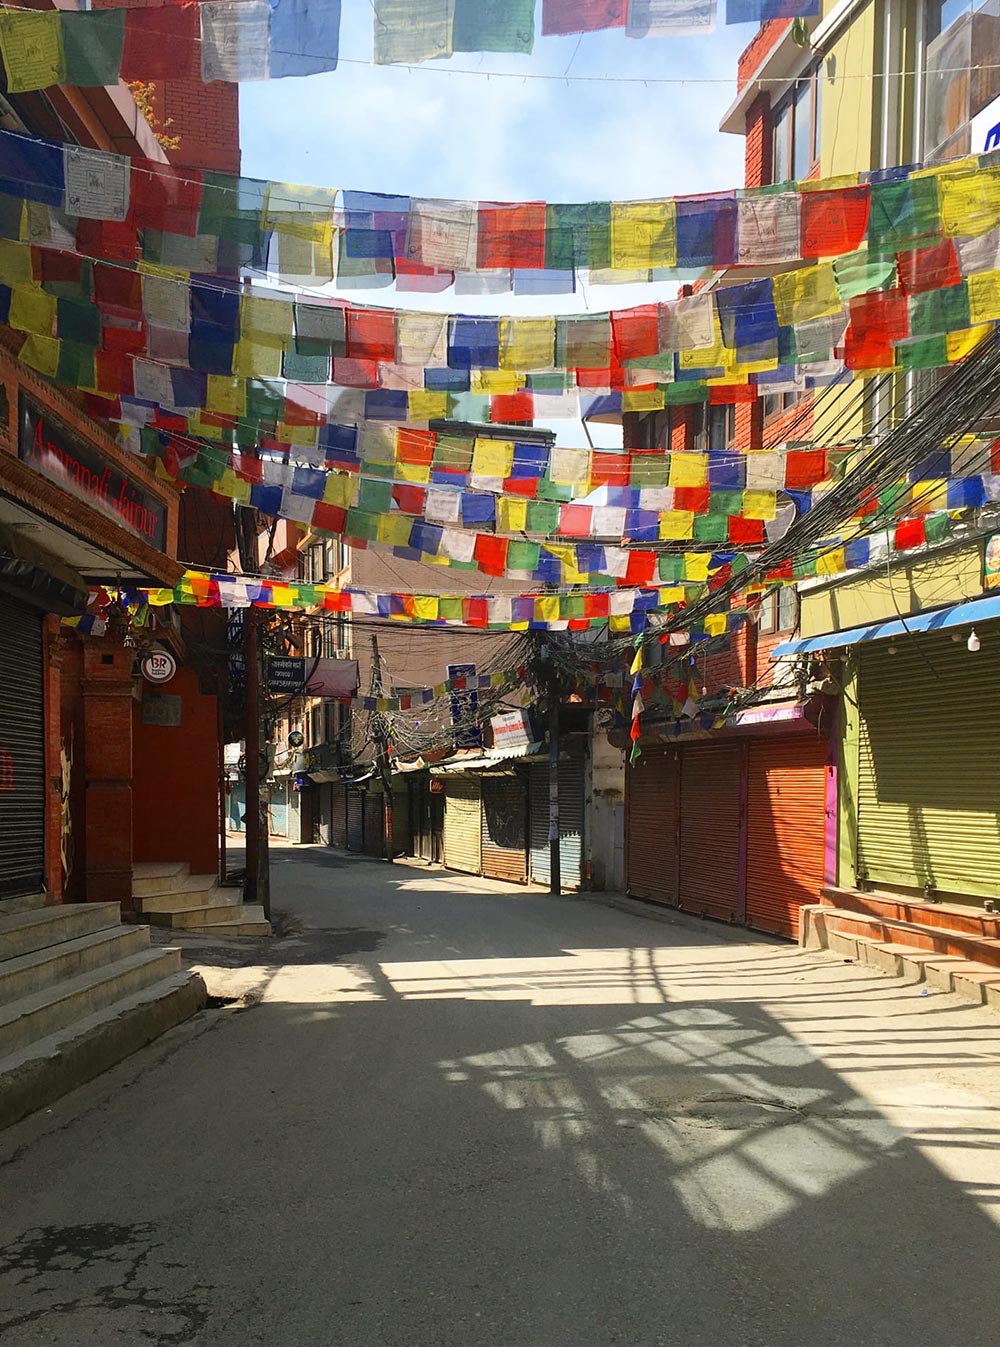 Опустевший Катманду, фотографии одной из застрявших туристок — Юлии Широченко